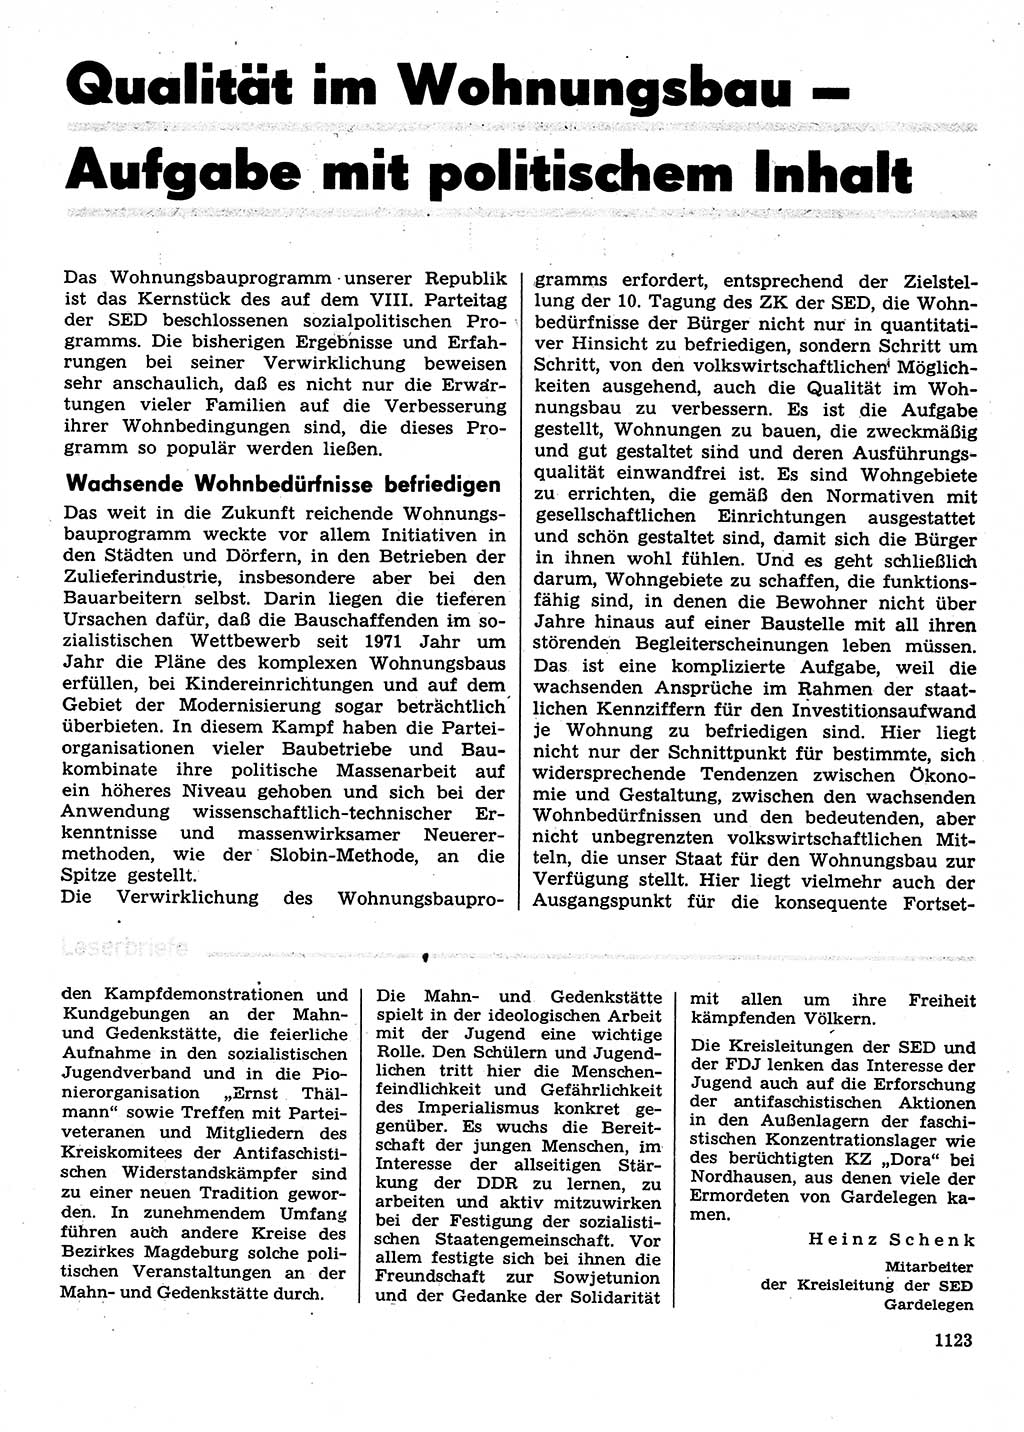 Neuer Weg (NW), Organ des Zentralkomitees (ZK) der SED (Sozialistische Einheitspartei Deutschlands) fÃ¼r Fragen des Parteilebens, 29. Jahrgang [Deutsche Demokratische Republik (DDR)] 1974, Seite 1123 (NW ZK SED DDR 1974, S. 1123)